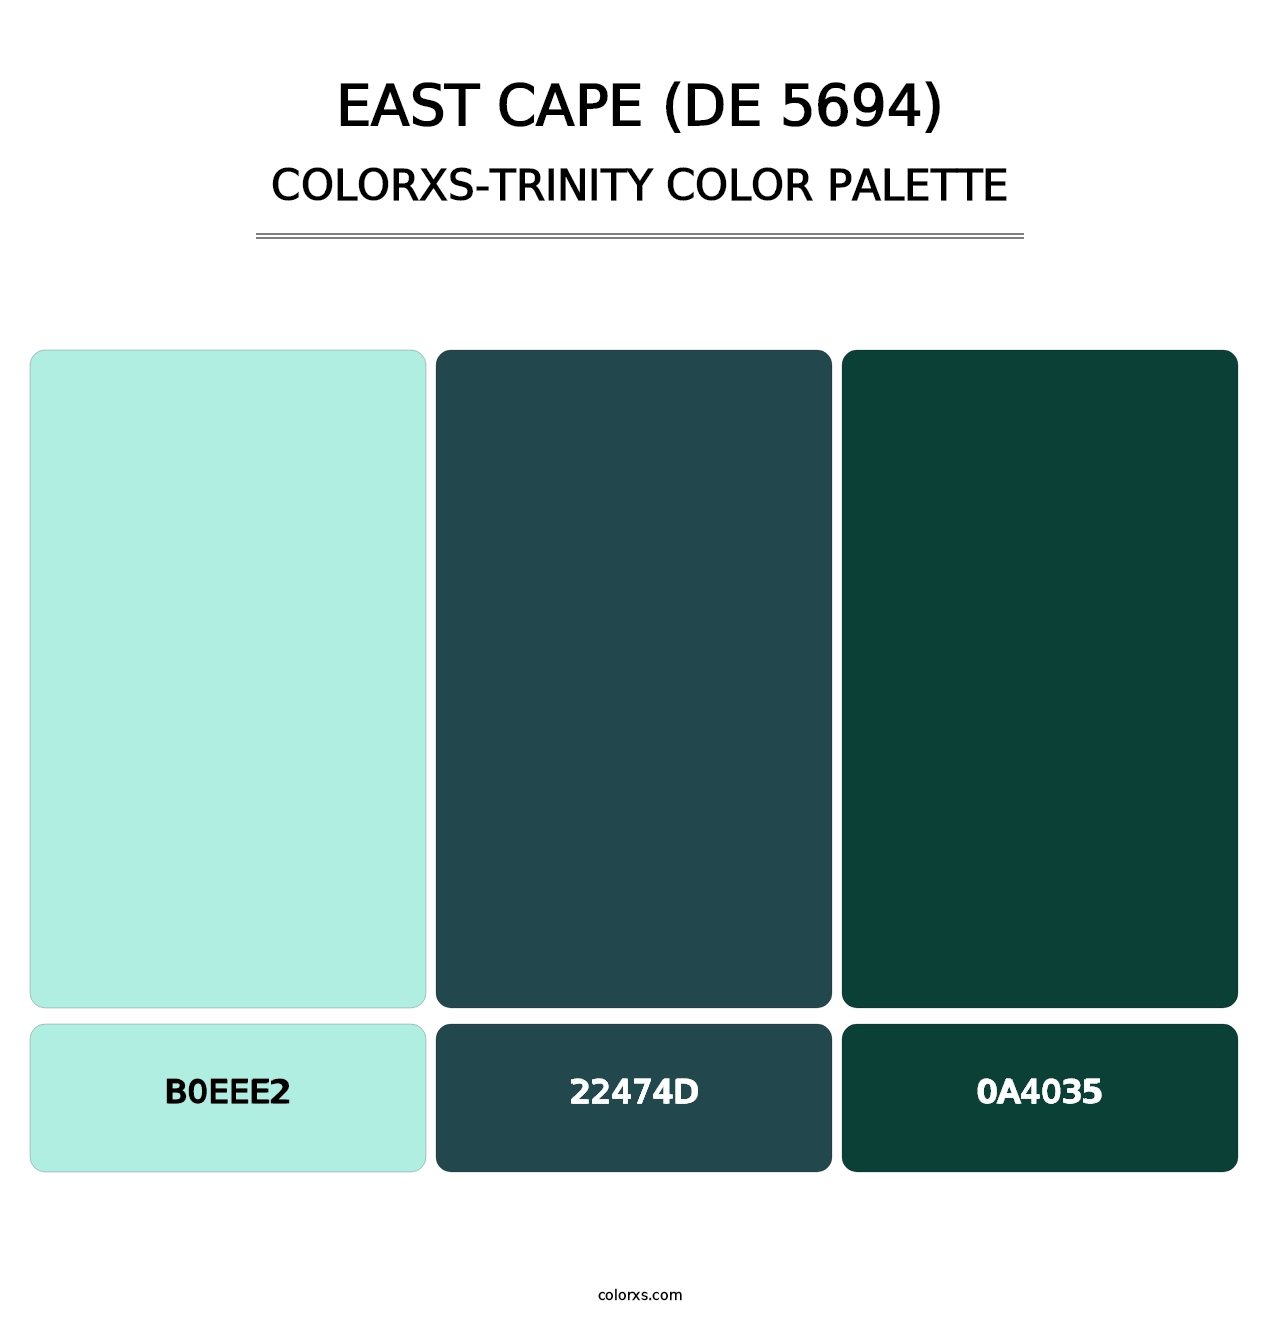 East Cape (DE 5694) - Colorxs Trinity Palette